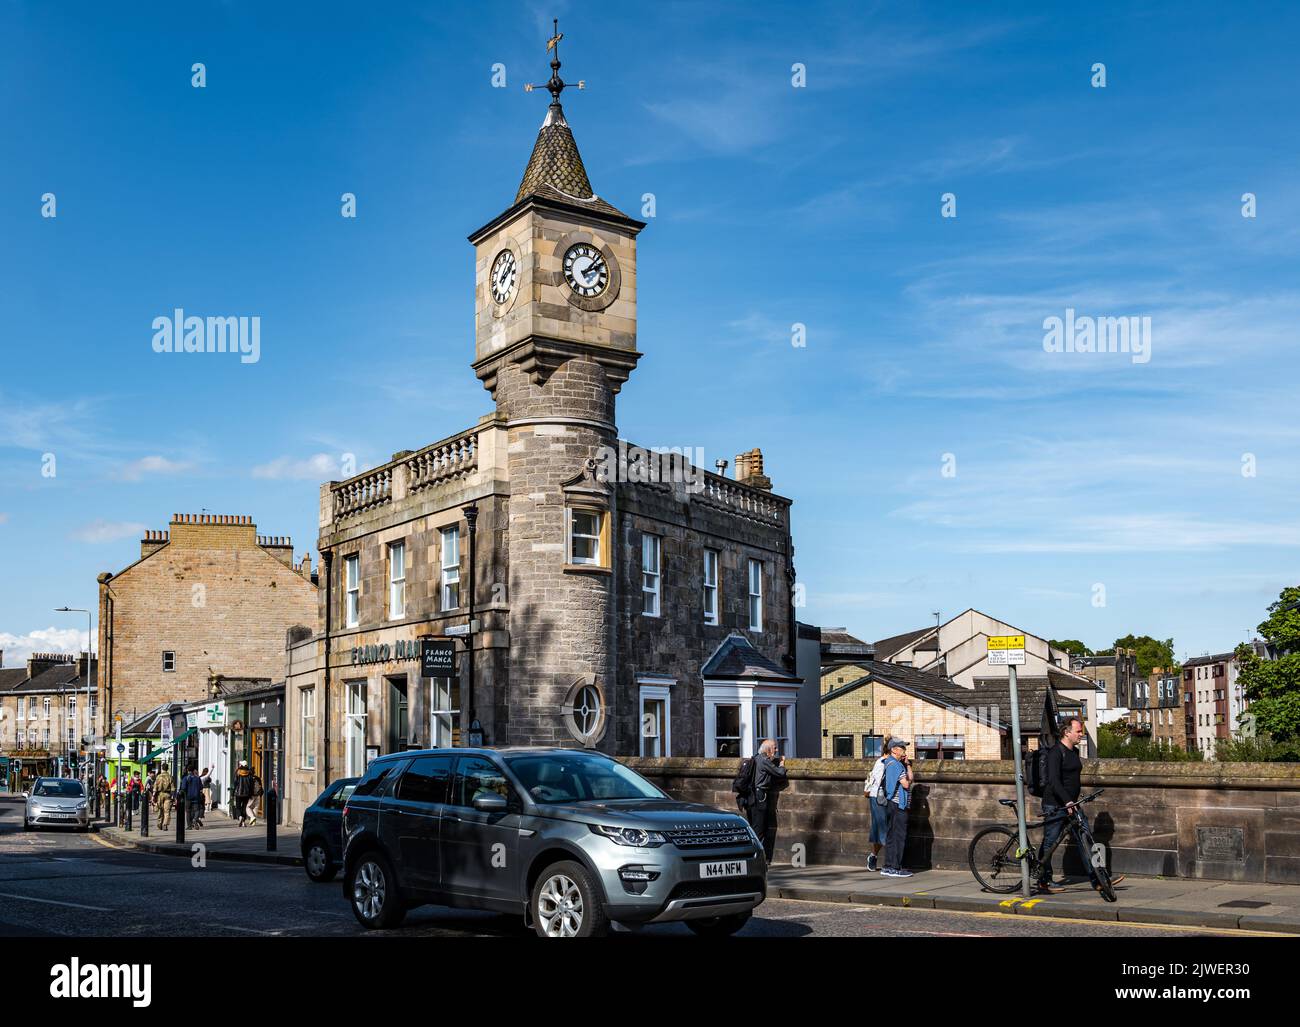 Uhrenturm auf altem viktorianischen Gebäude, ehemalige Bank jetzt ein Restaurant, Stockbridge, Edinburgh, Schottland, Großbritannien Stockfoto